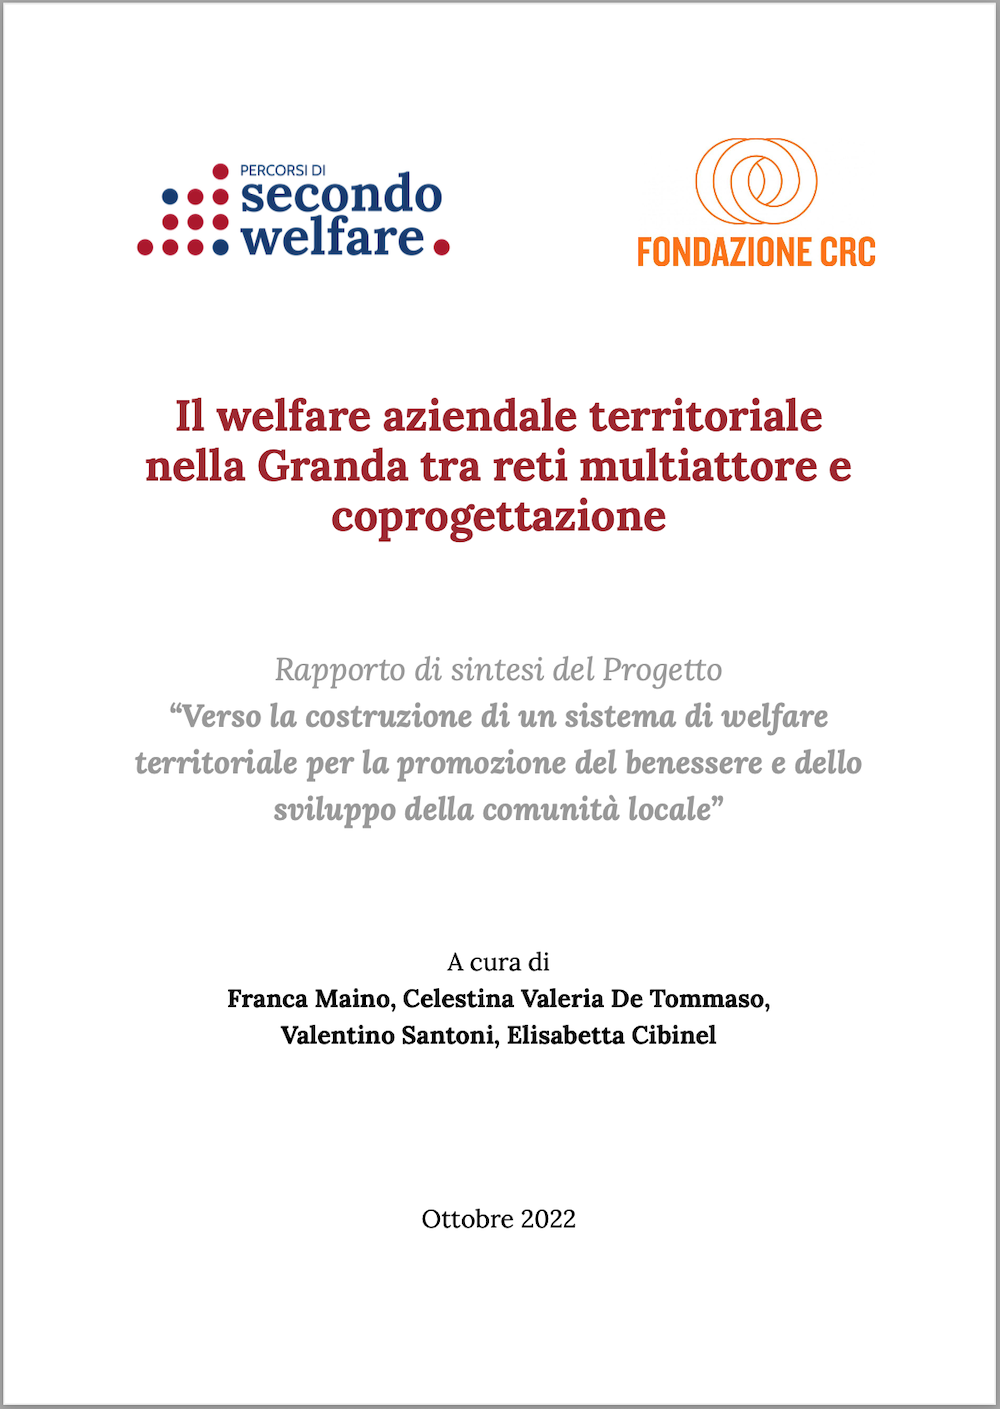 Copertina del report "Il welfare aziendale territoriale nella Granda tra reti multiattore e coprogettazione"